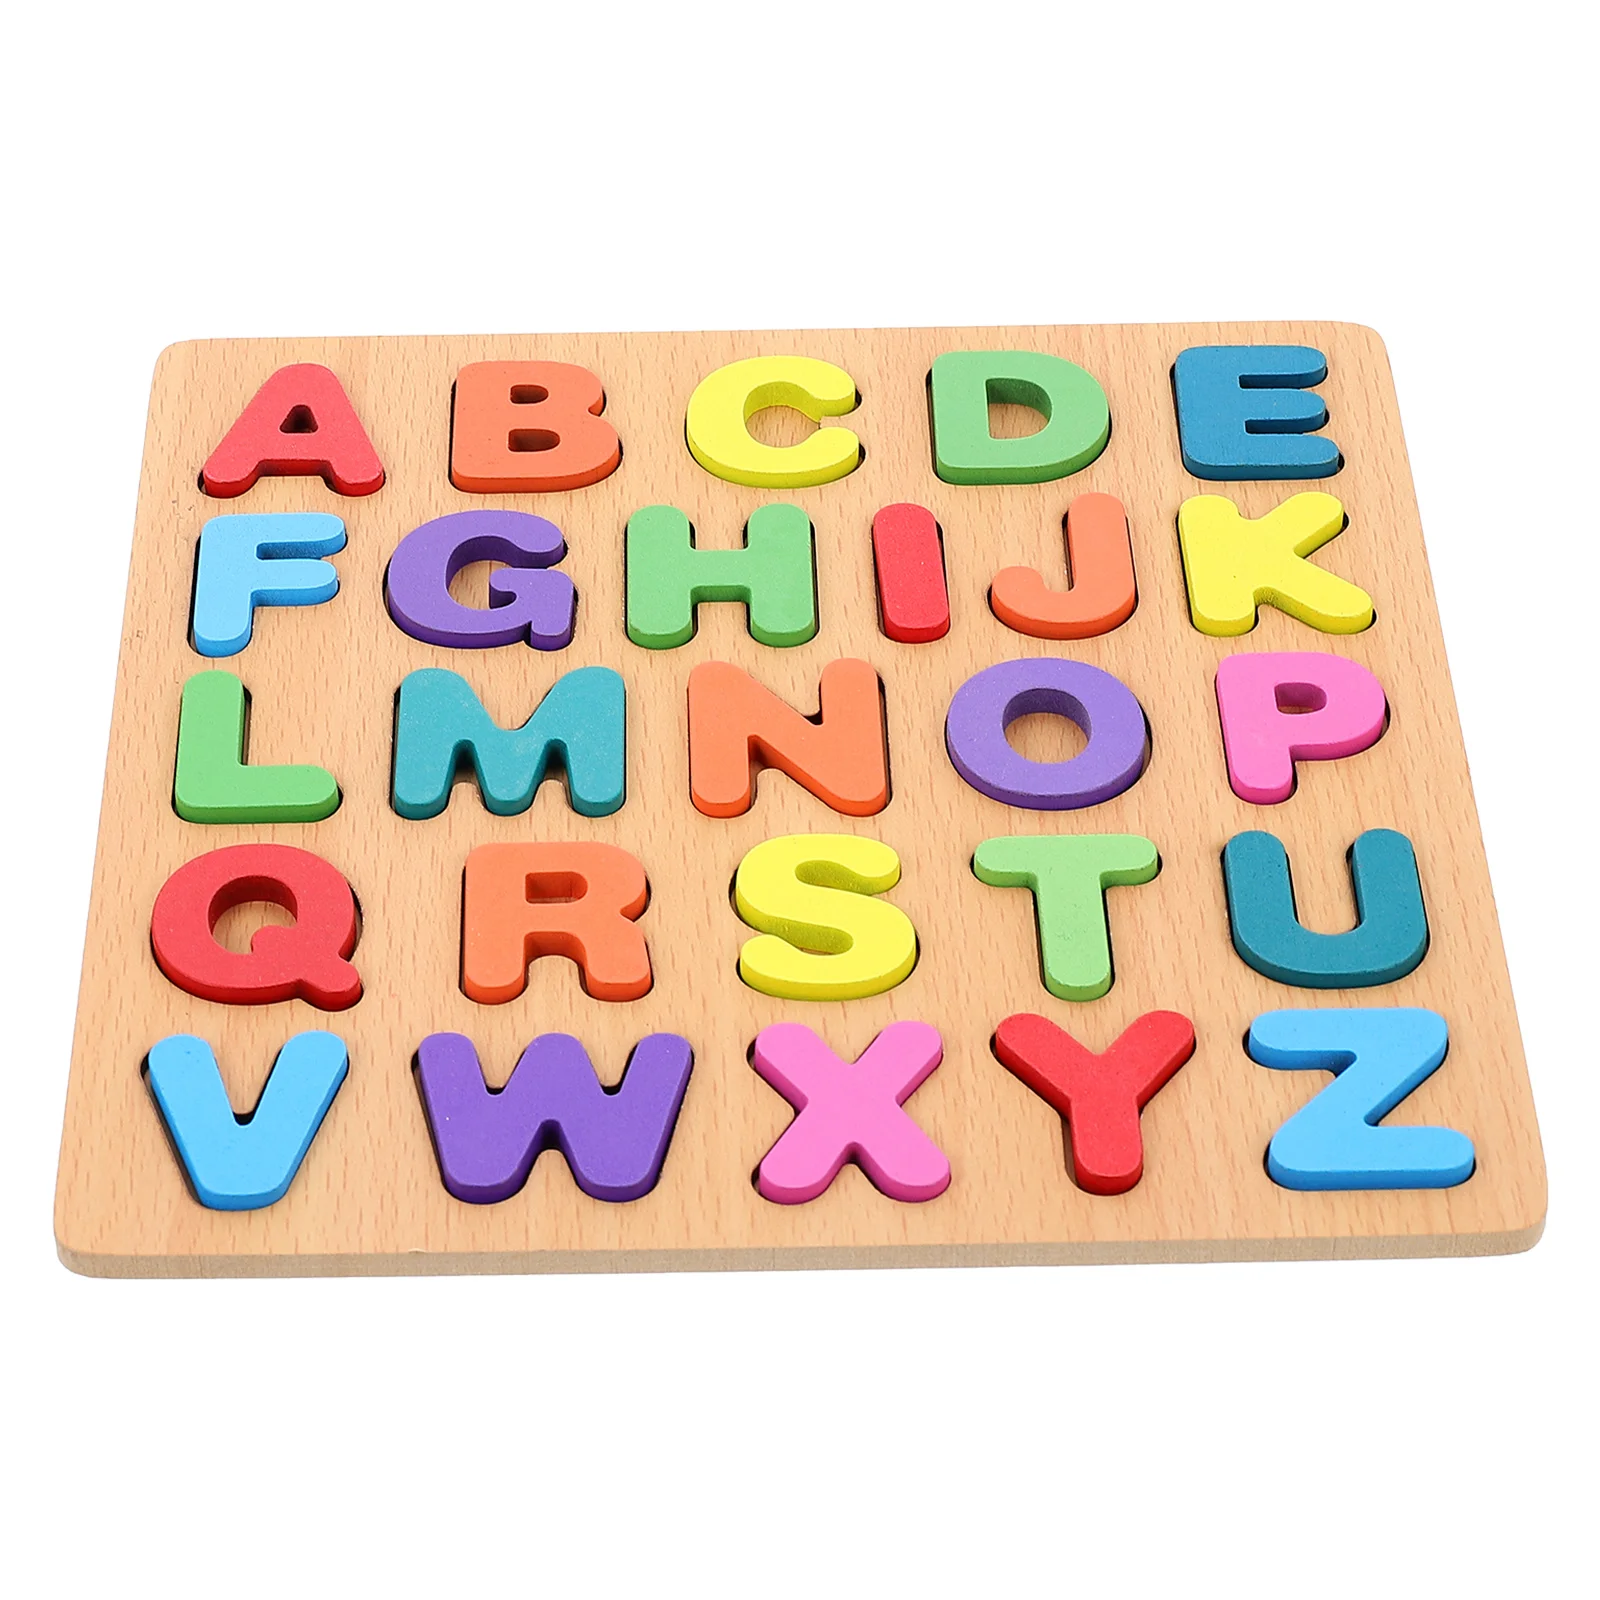 

Пазл для раннего развития, деревянные игрушки для малышей, обучающий алфавит для детей, Детский пазл для обучения